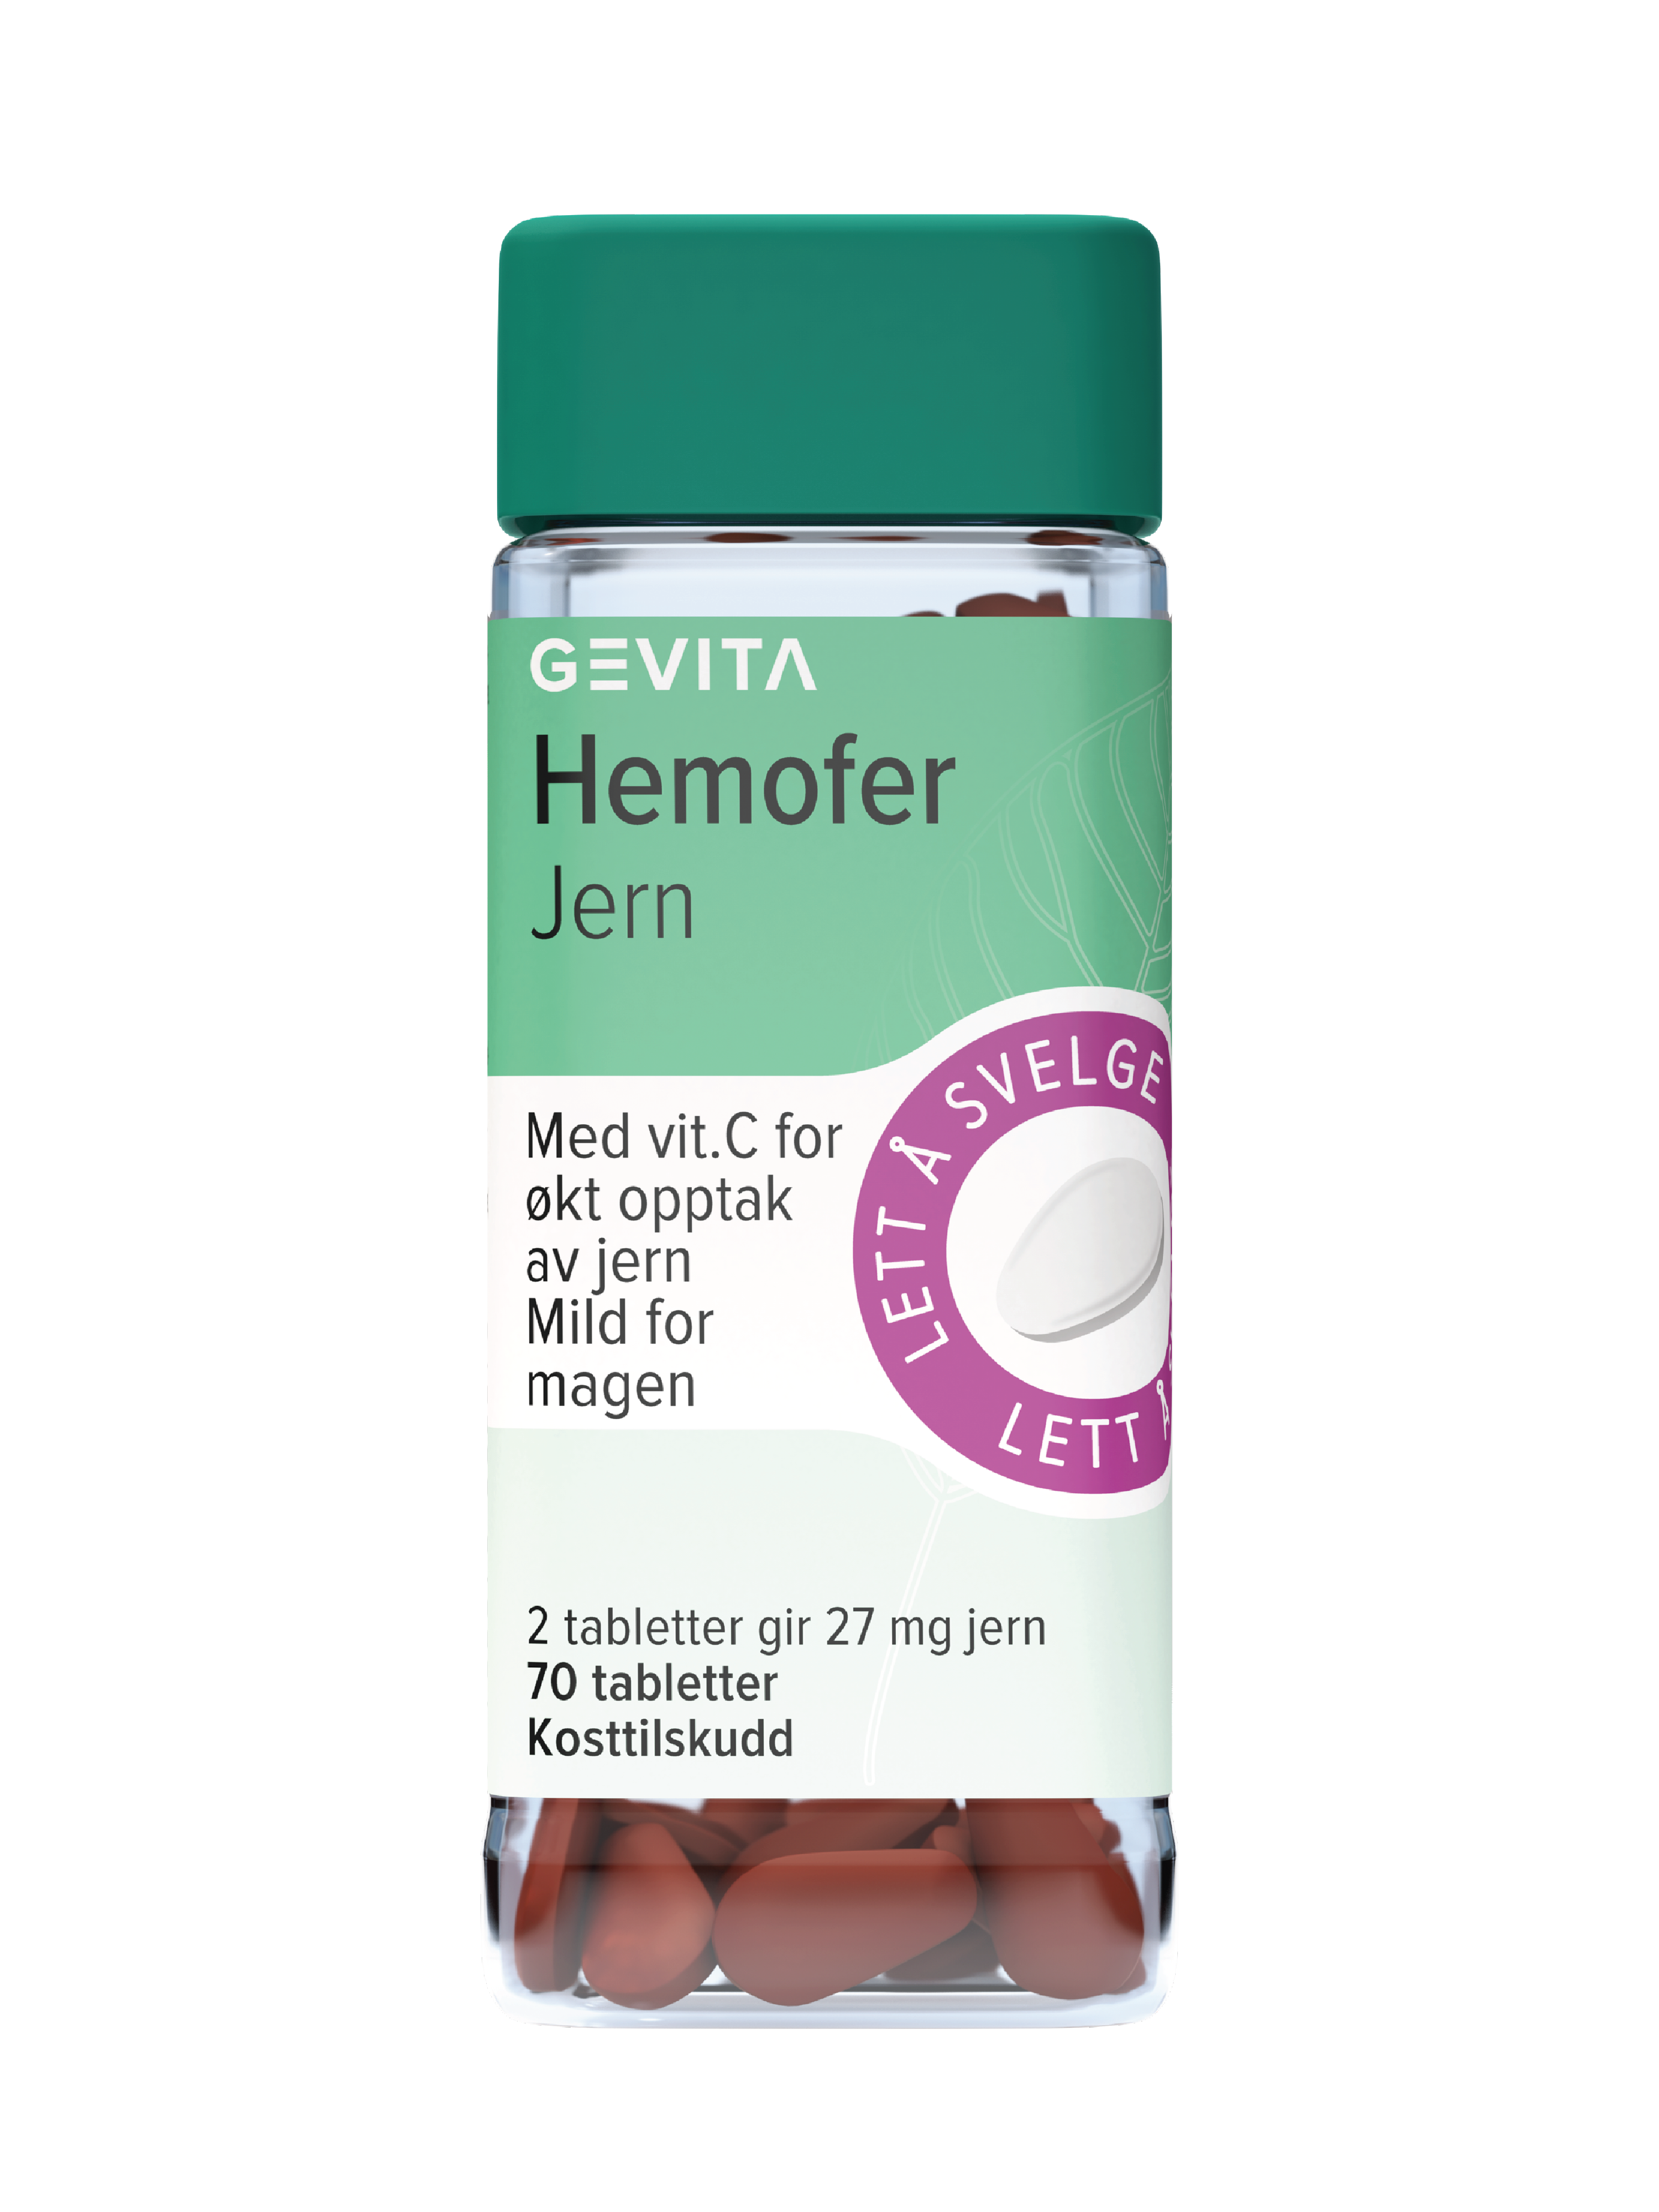 Gevita Hemofer Jern, 70 tabletter